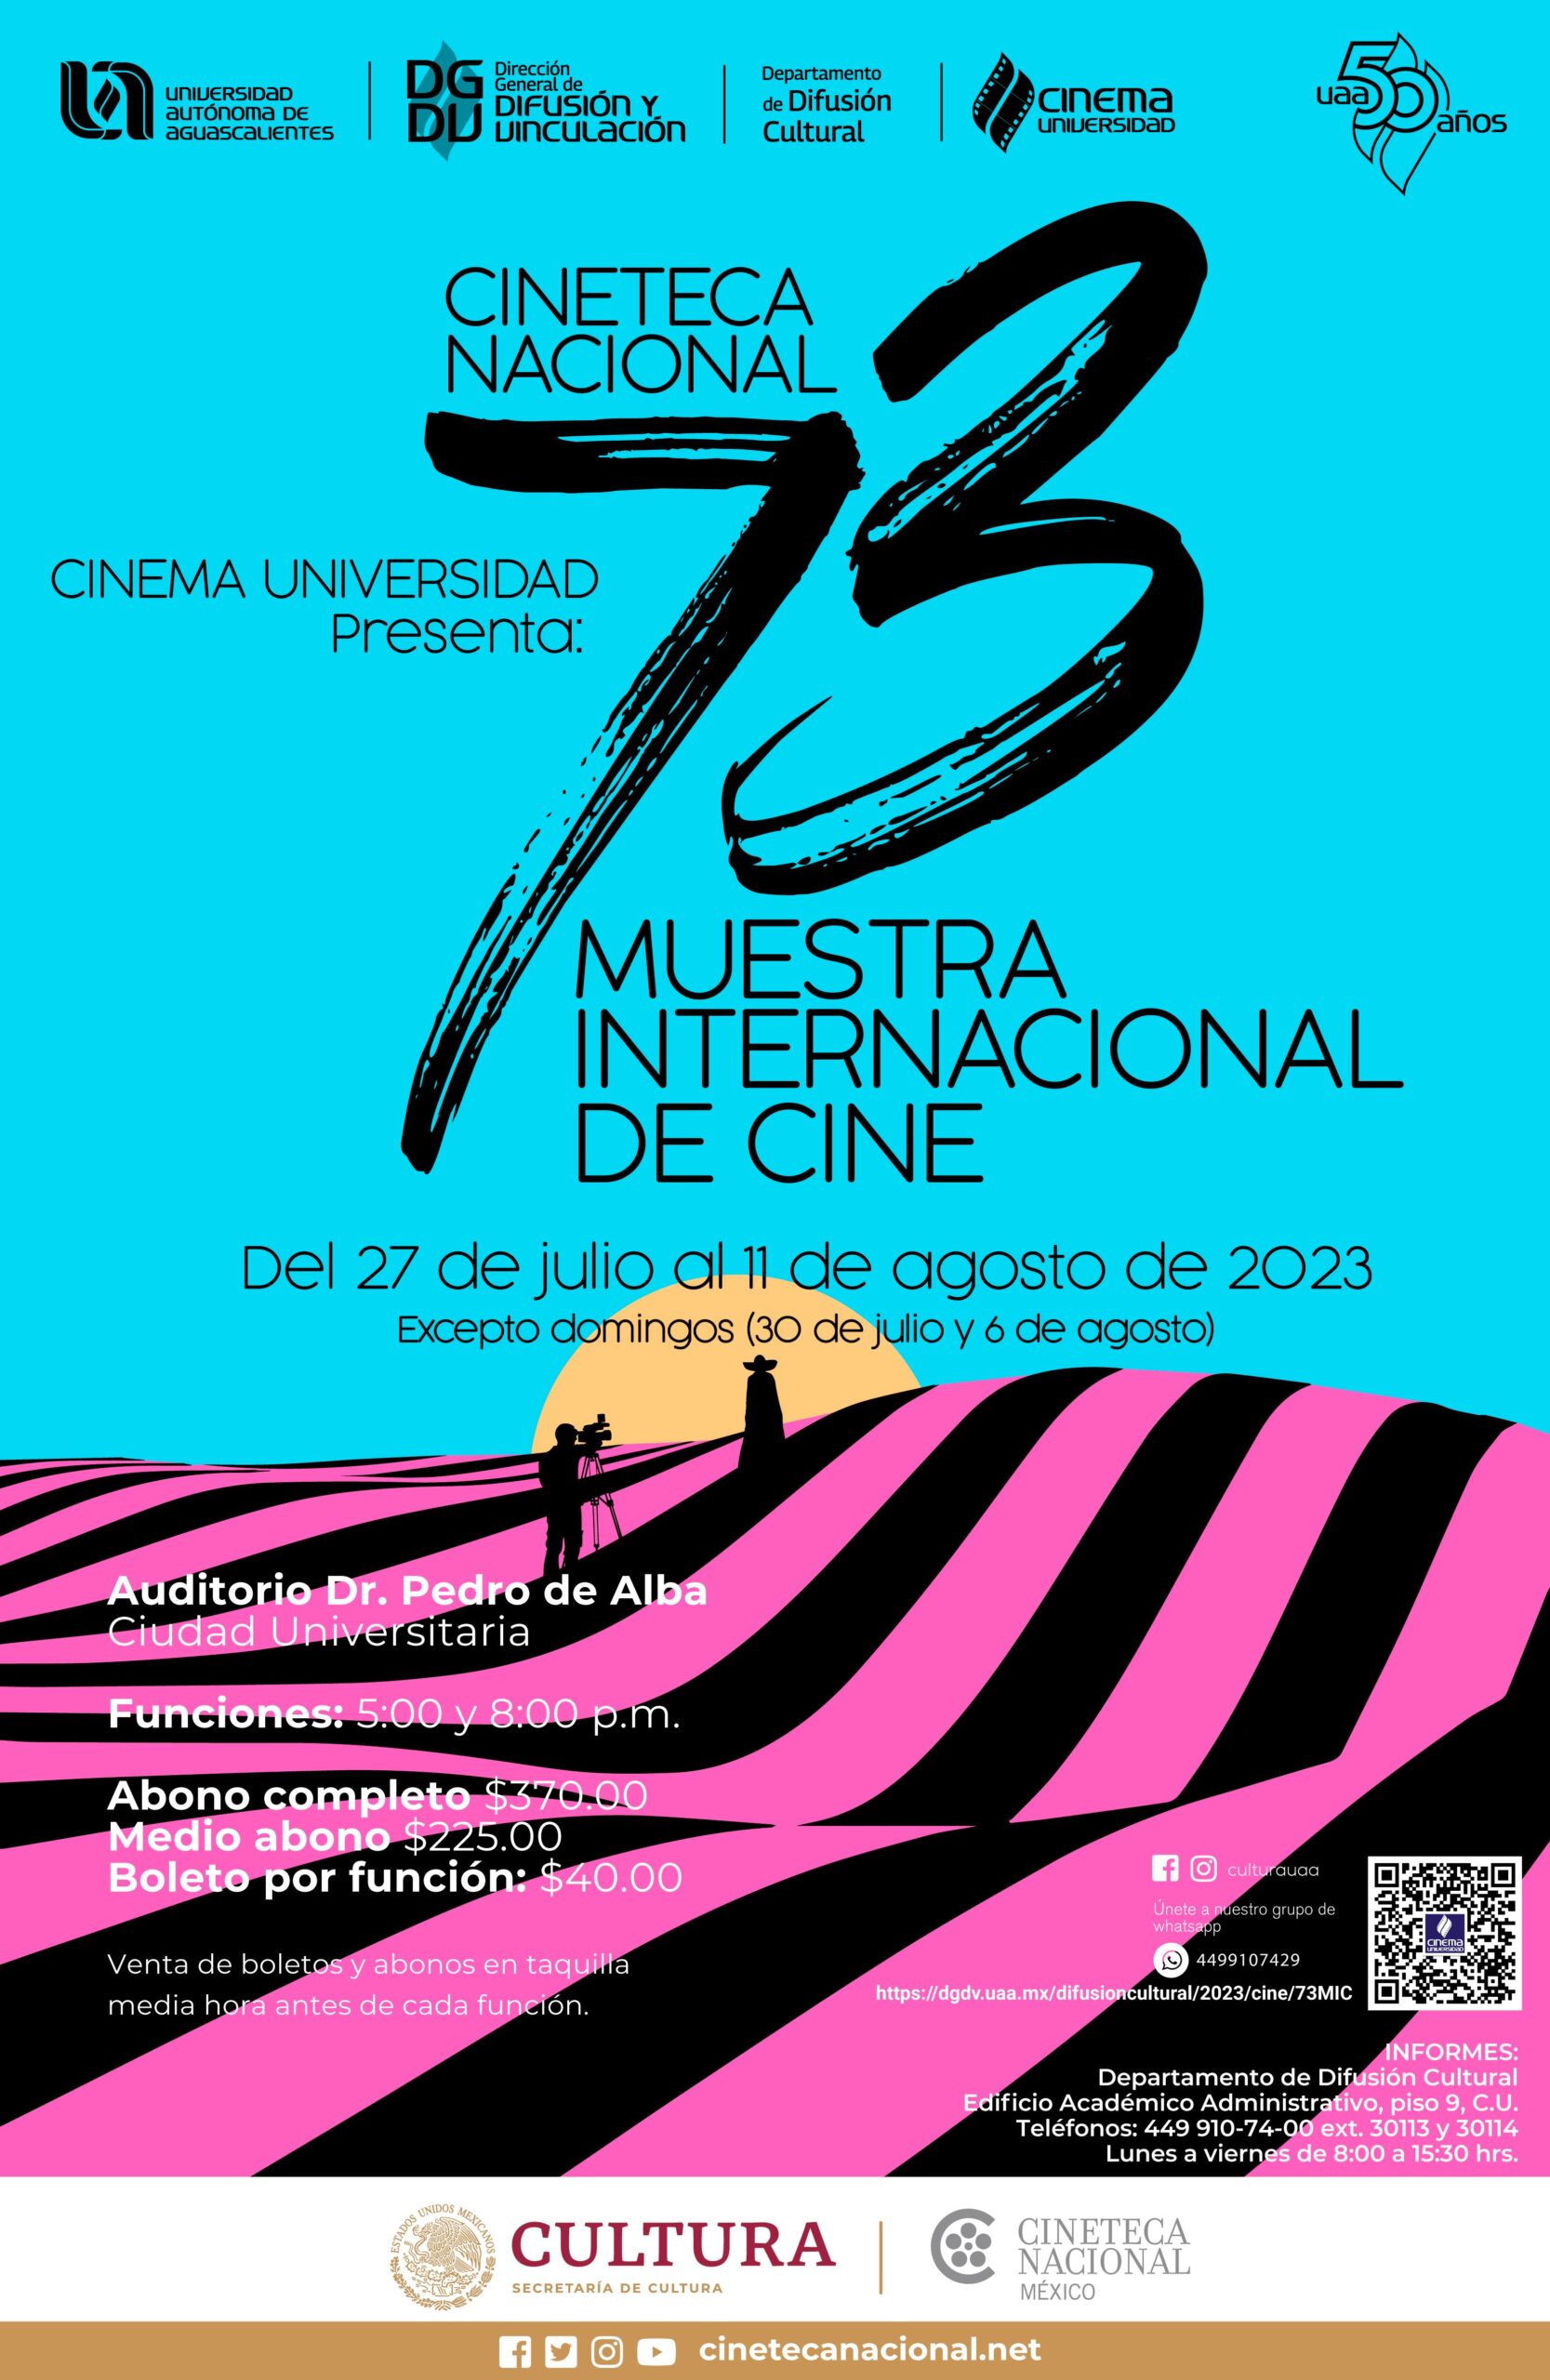 El renovado auditorio Dr. Pedro de Alba albergará la edición 73 de la Muestra Internacional de Cine